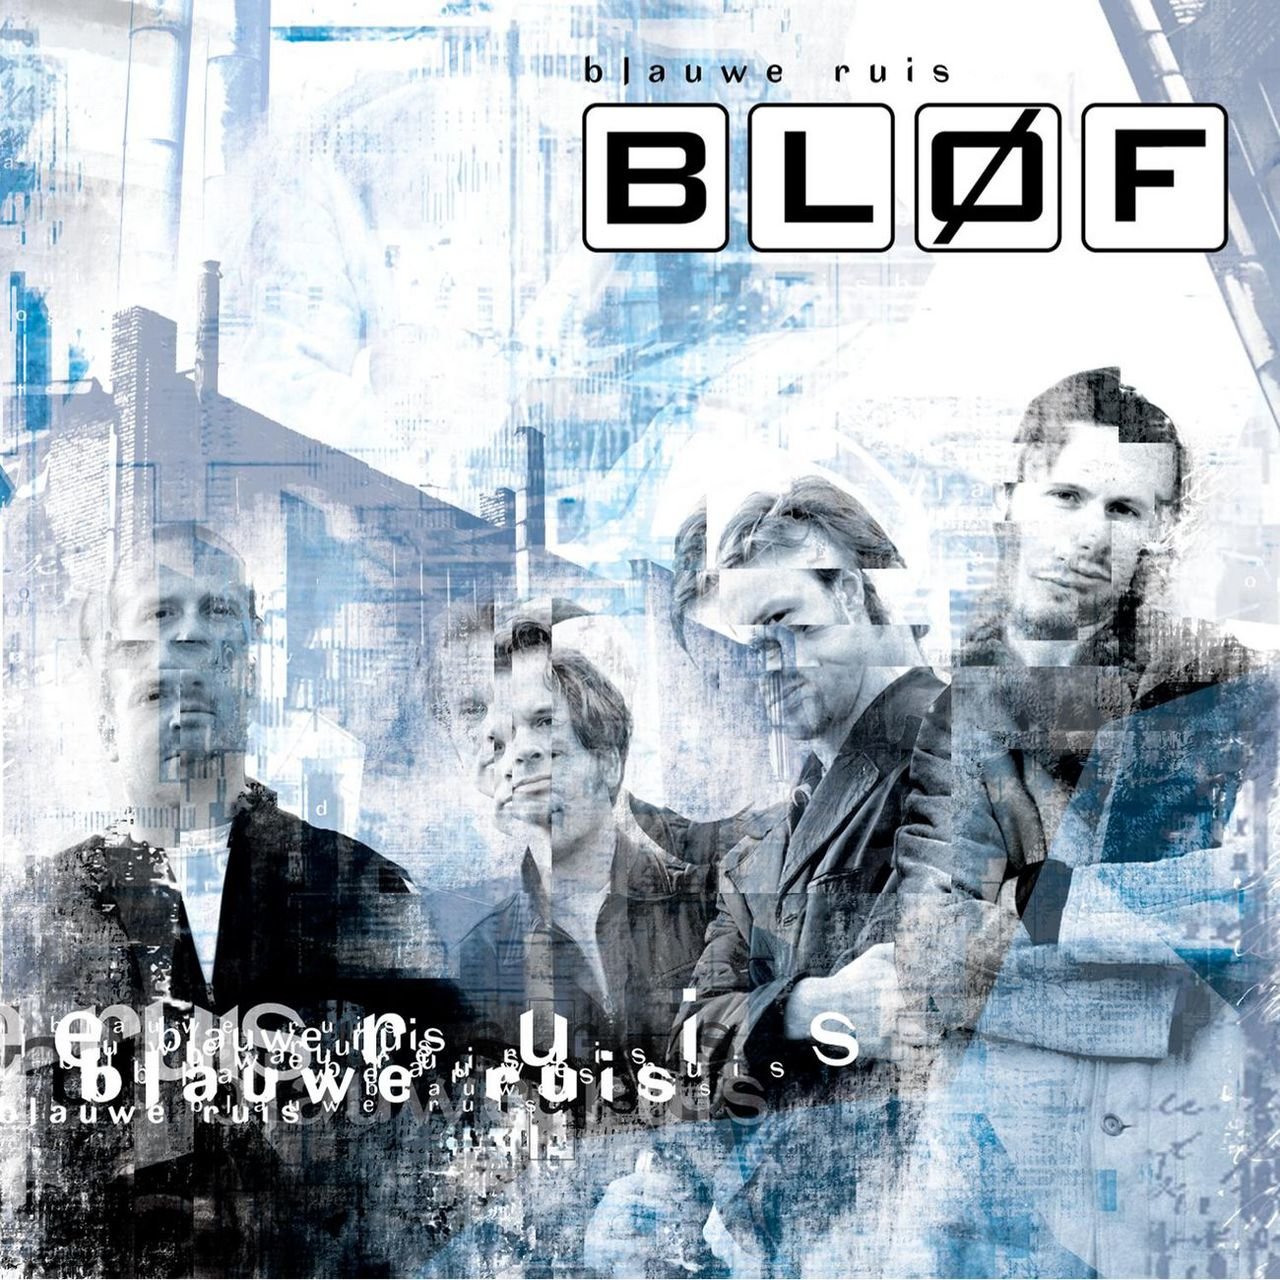 Bløf-Blauwe ruis (2002)